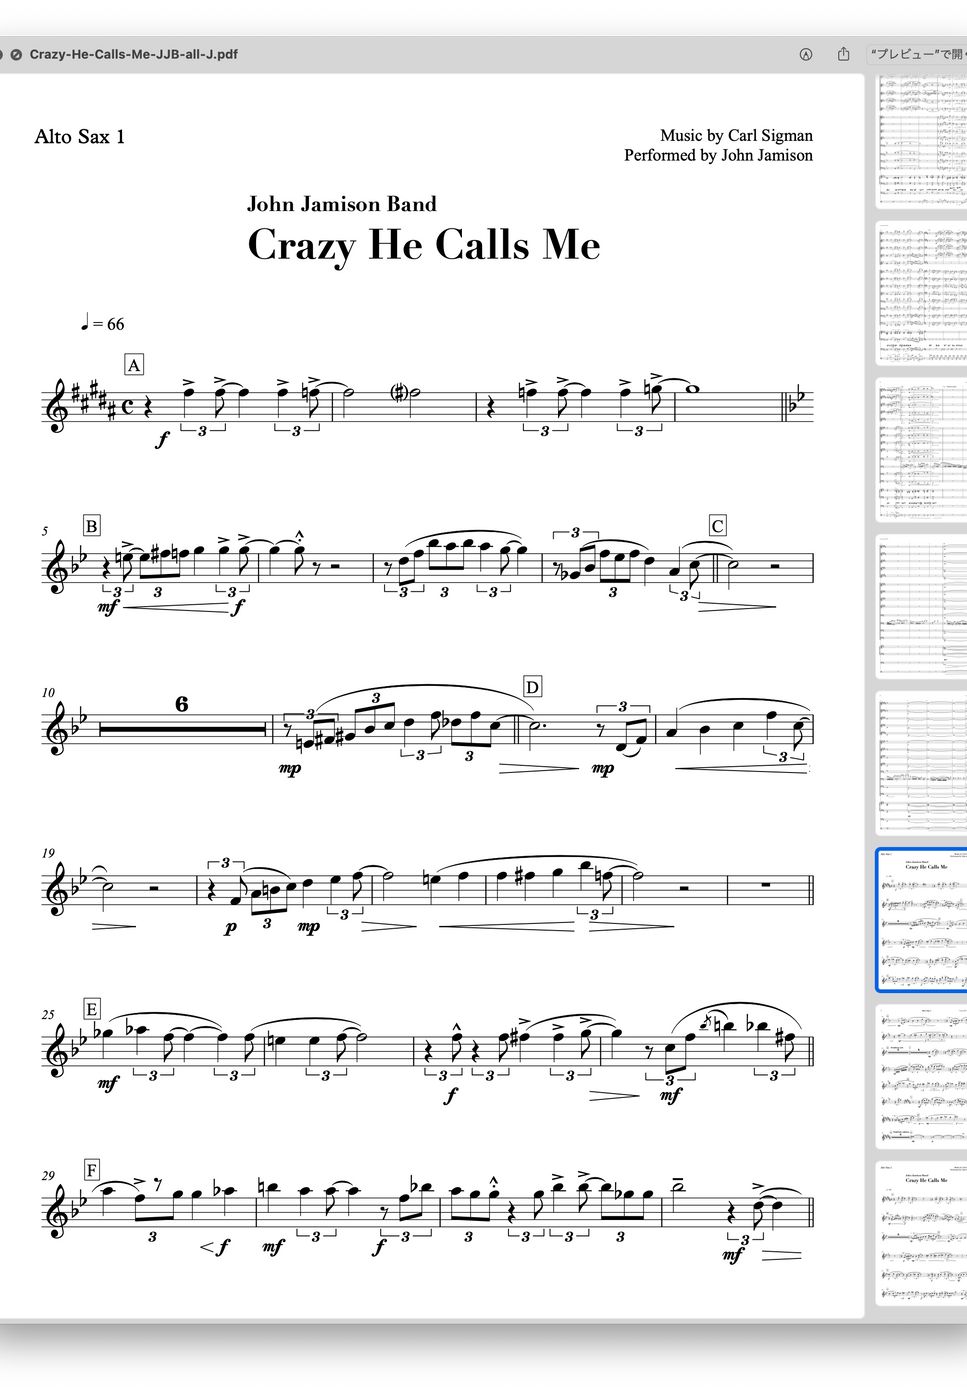 John Jamison Band - Crazy He Calls Me - John Jamison Band (Big Band Score & Parts) (ビッグバンド・スコア＆パート譜) by ebony-ivory